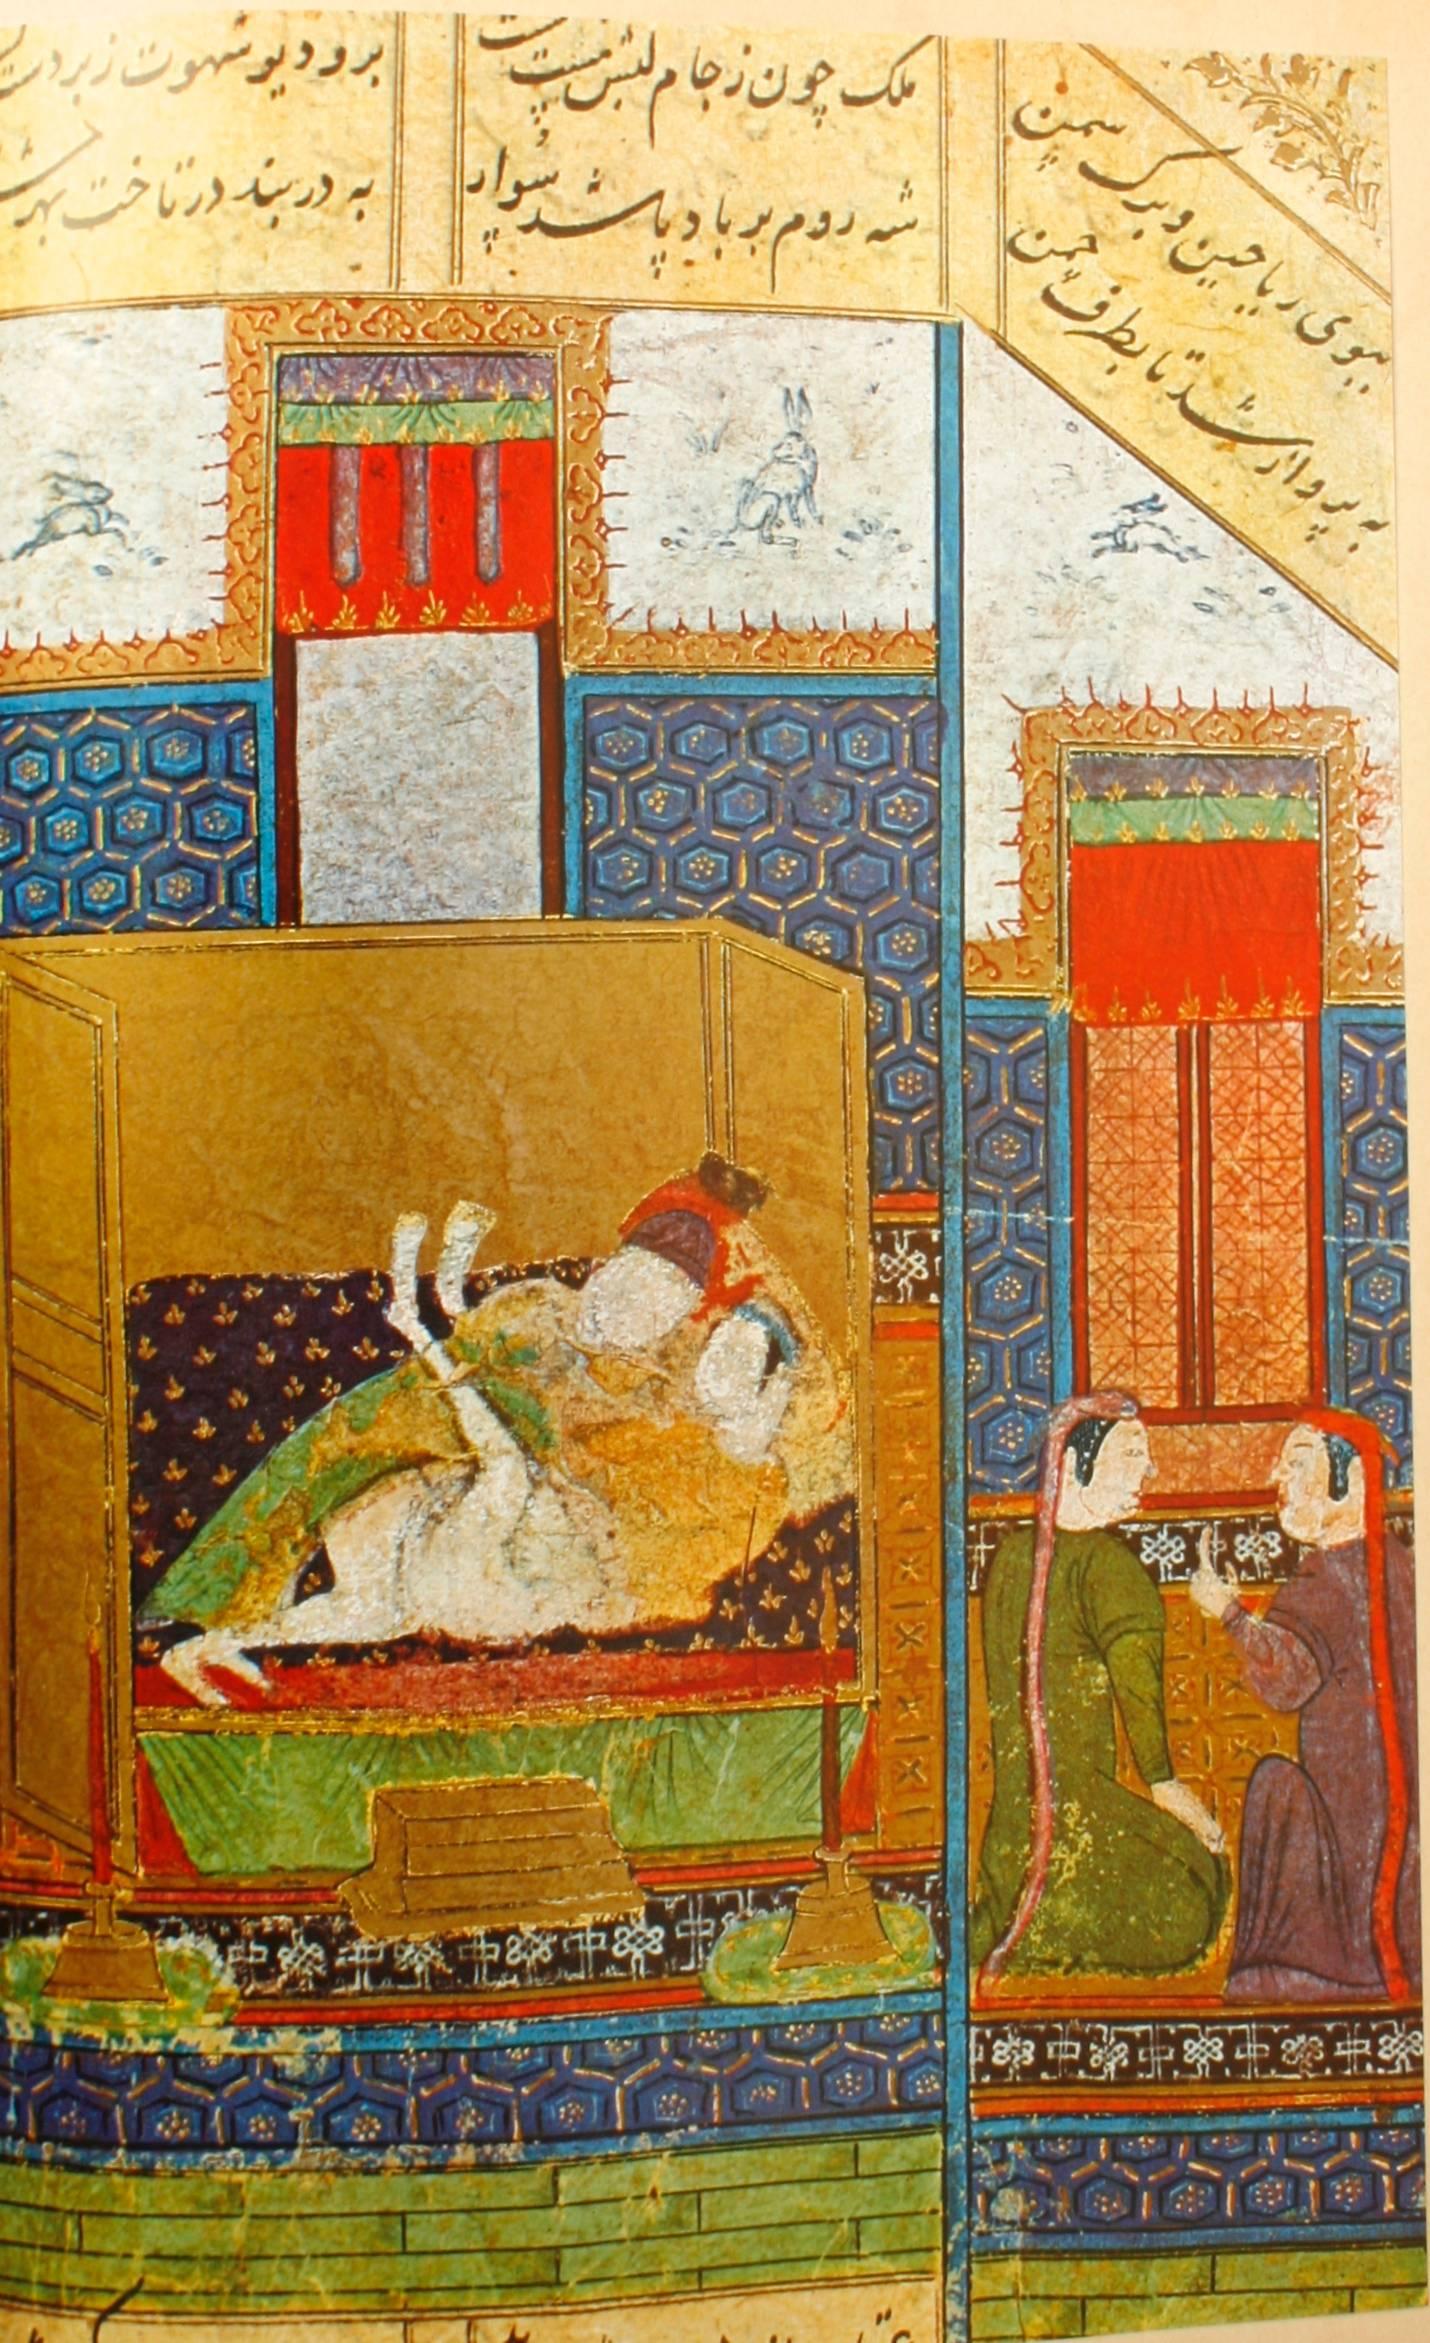 Swiss Sara É Naz, Erotic Themes in Ancient Iran by Robert Surieu, 1st Ed